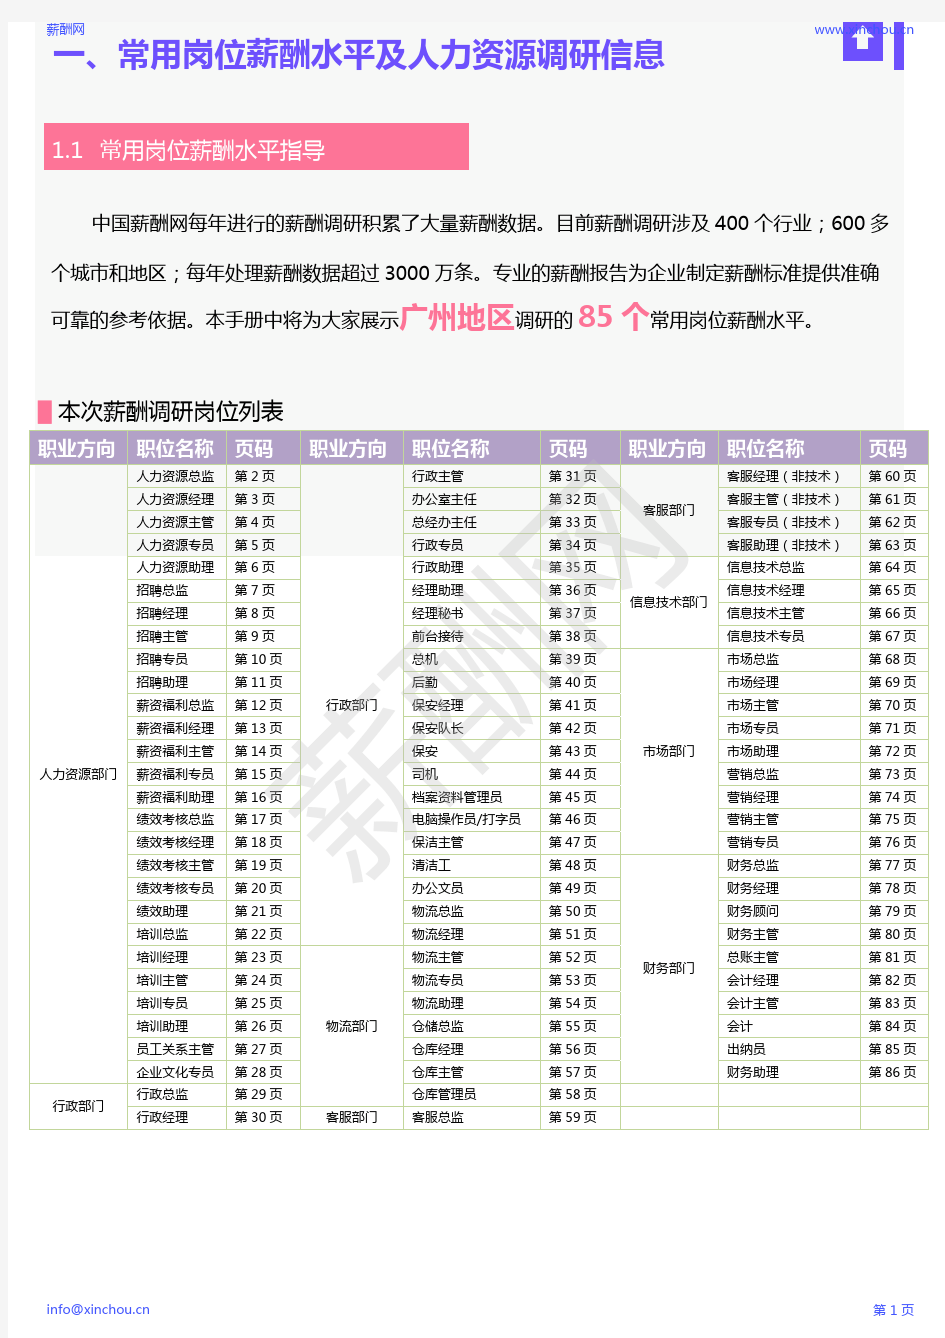 薪酬报告系列-2020年广州地区薪酬调查报告